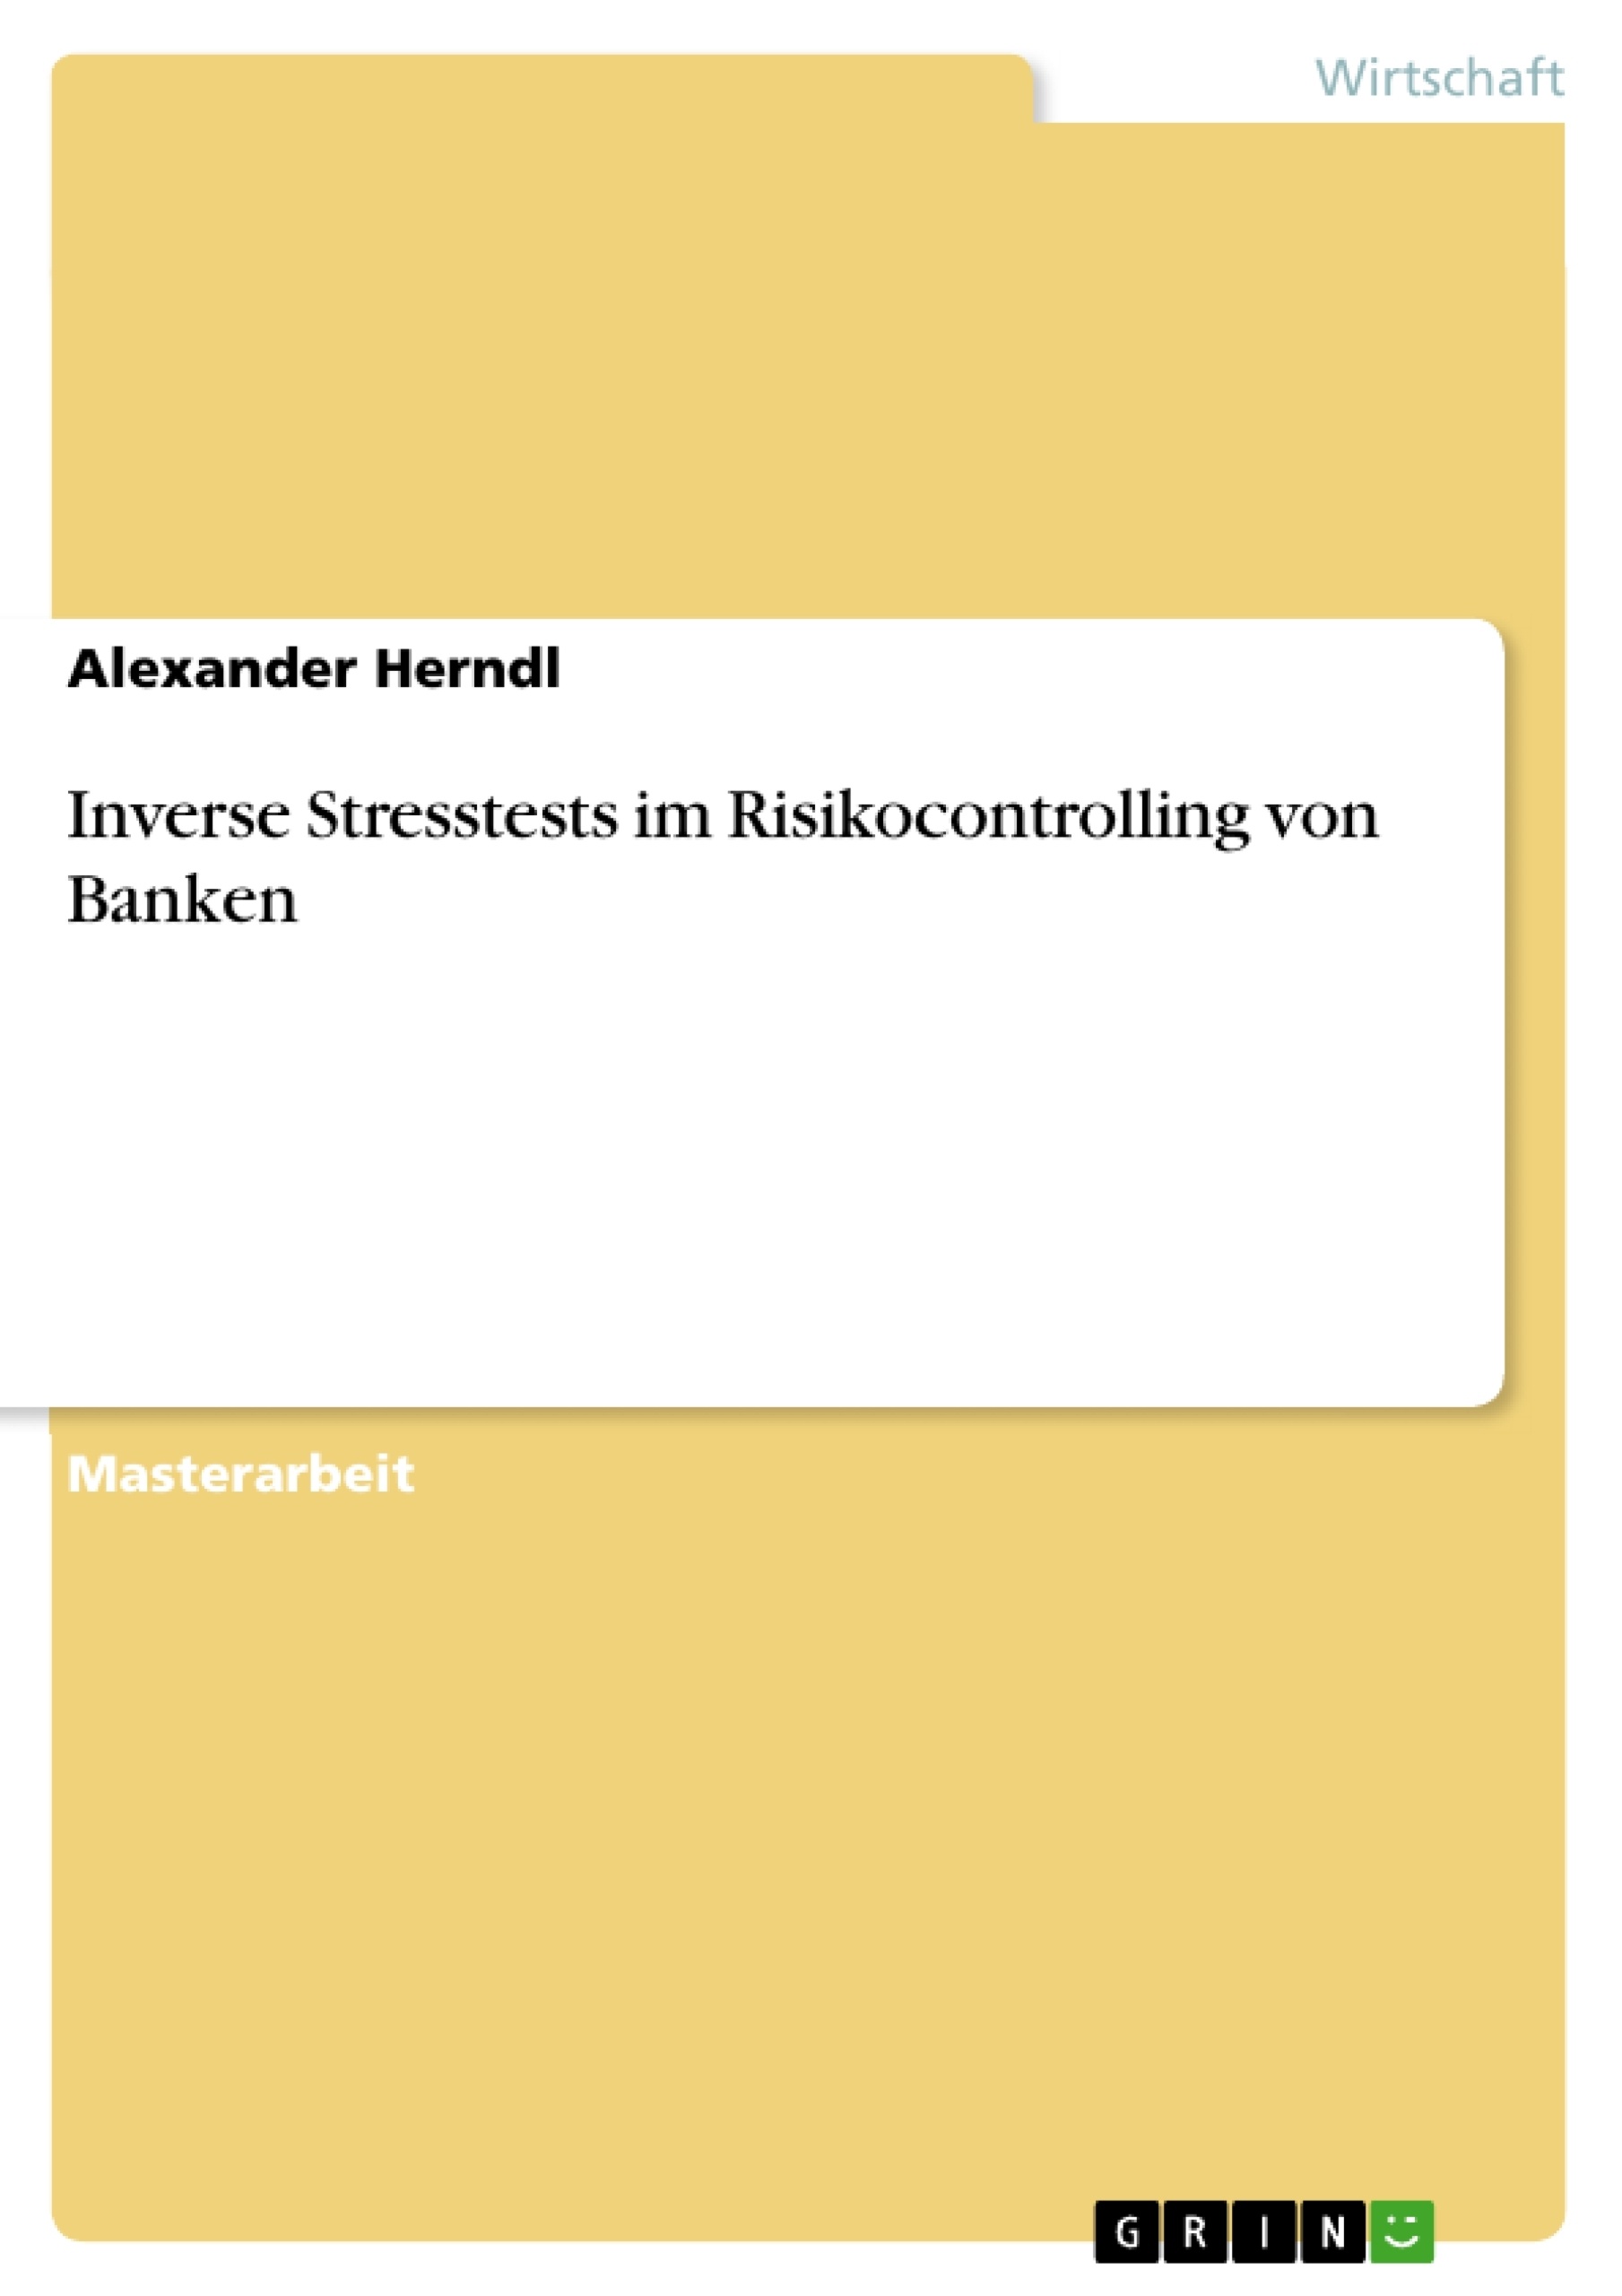 Título: Inverse Stresstests im Risikocontrolling von Banken